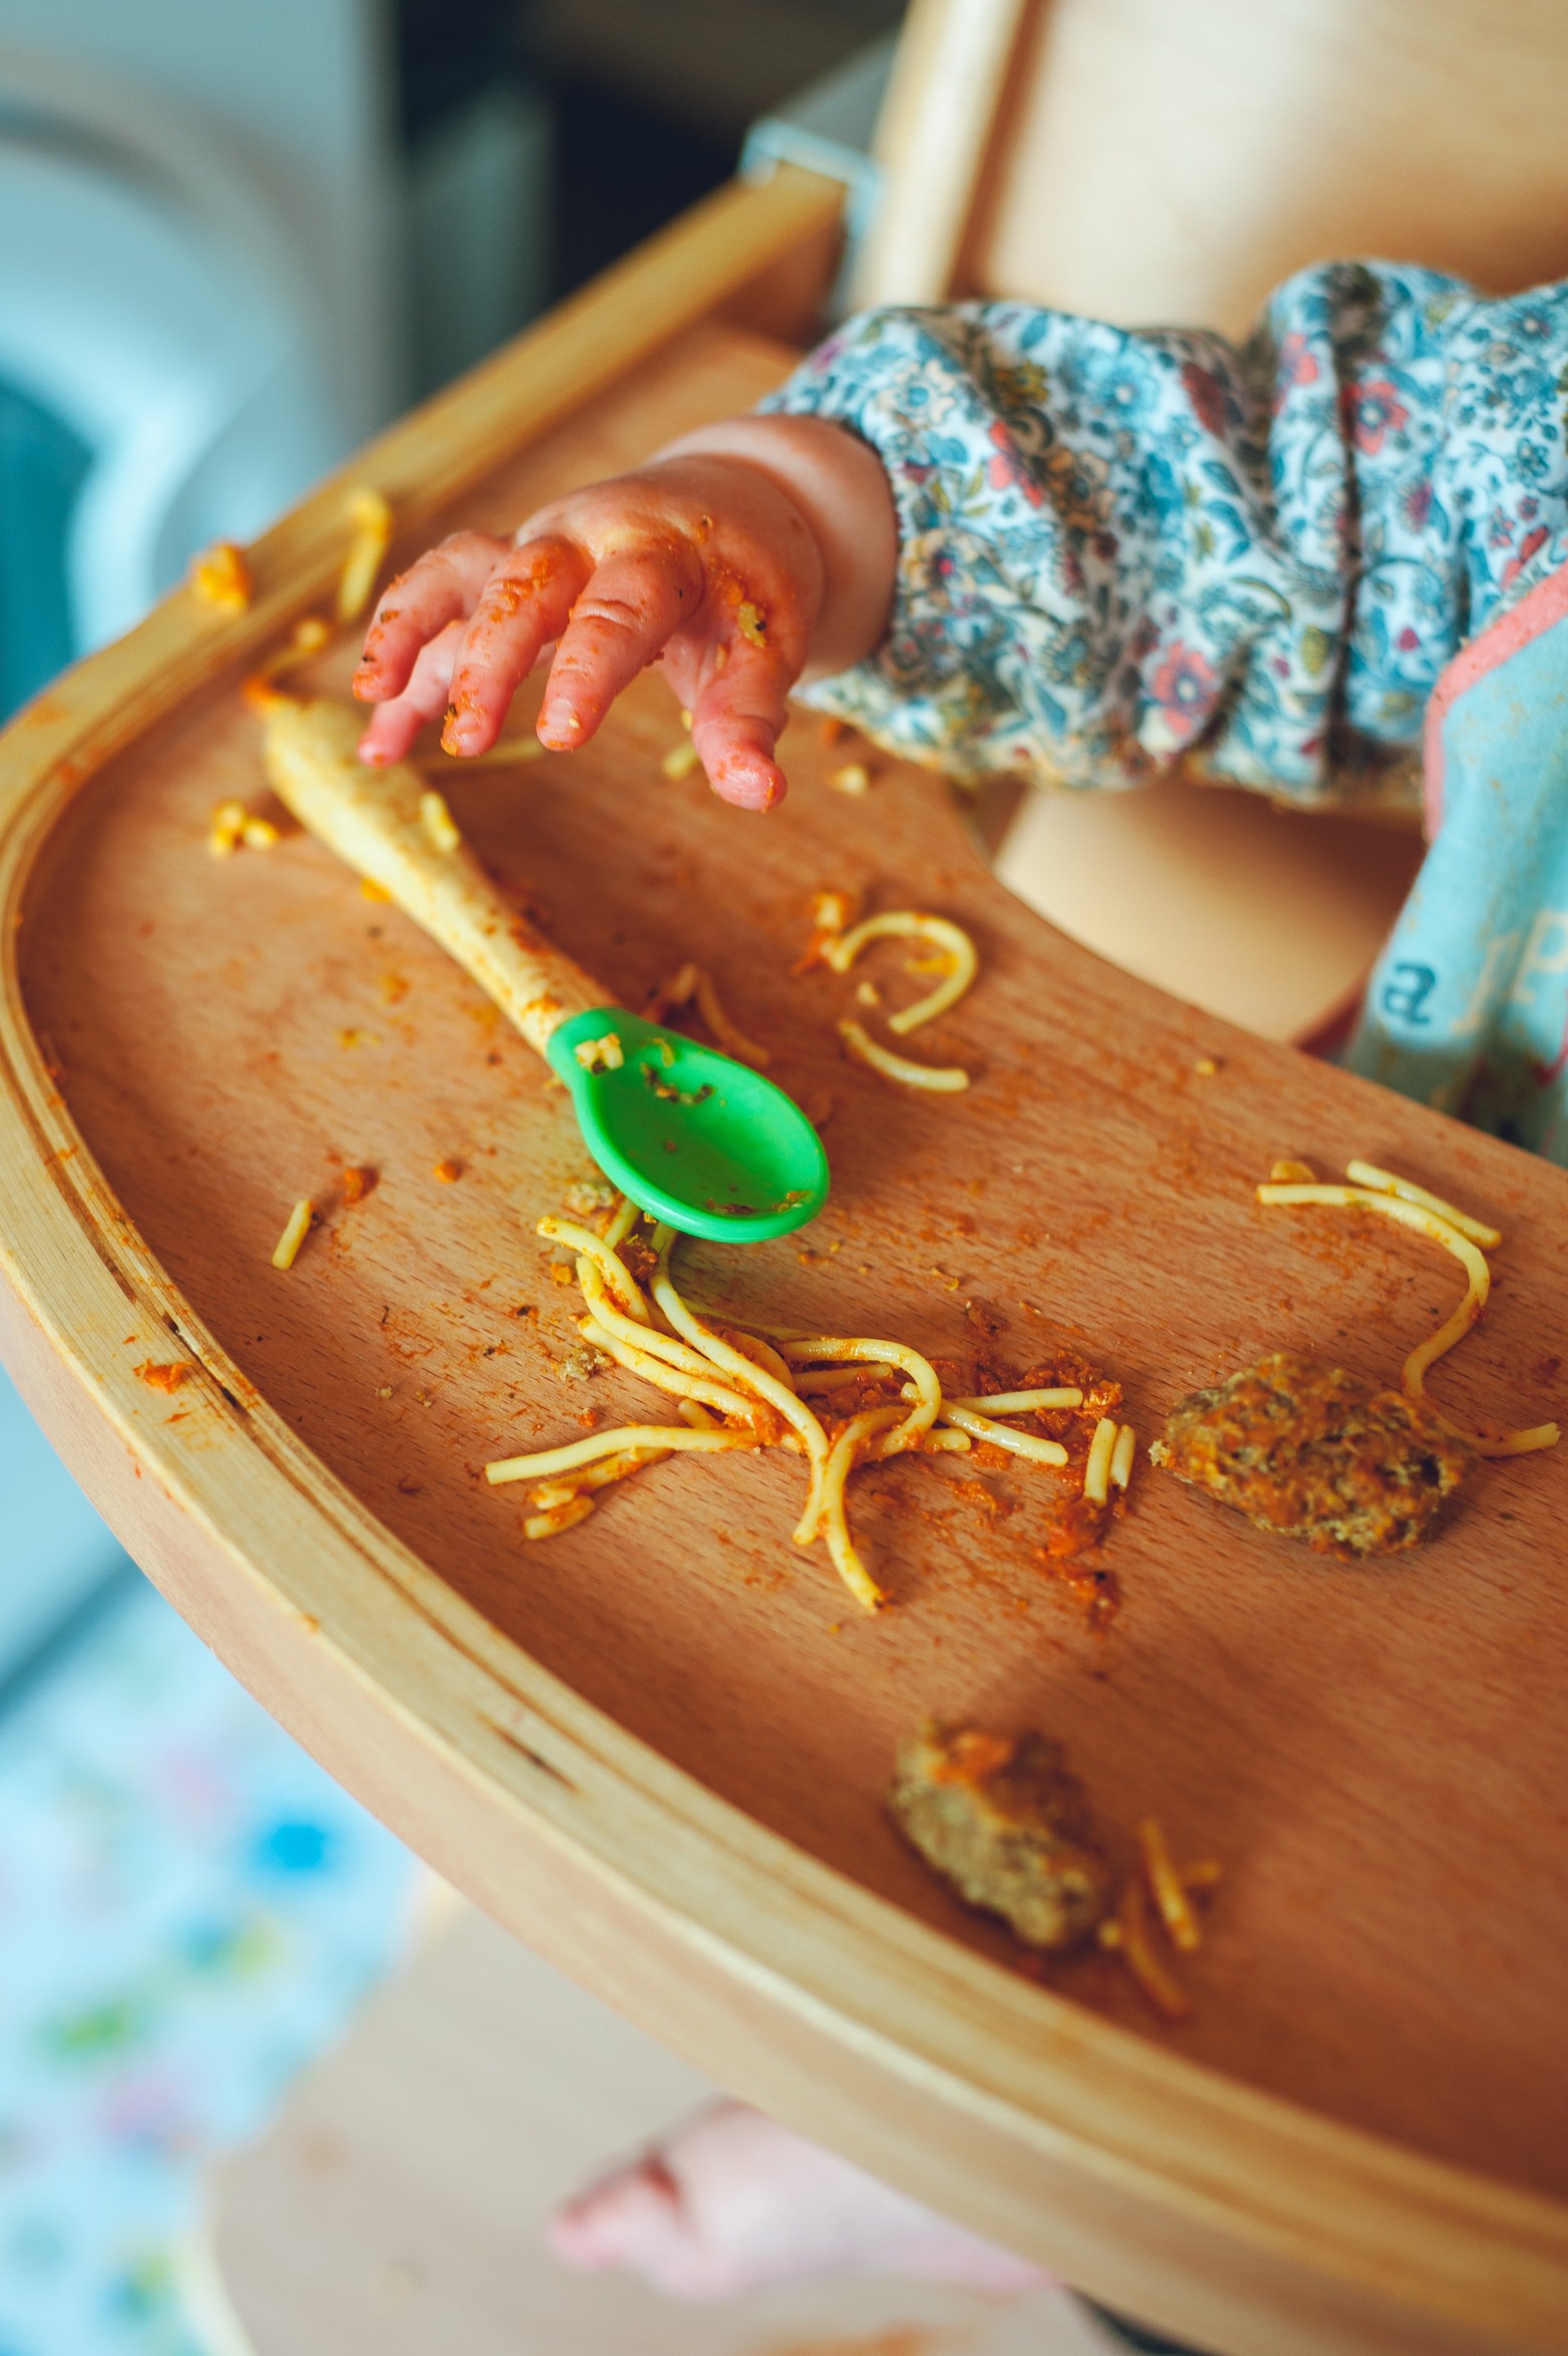 Τι πρέπει να τρώει το παιδί σου καθημερινά και τι να αποφεύγει σύμφωνα με παιδίατρο